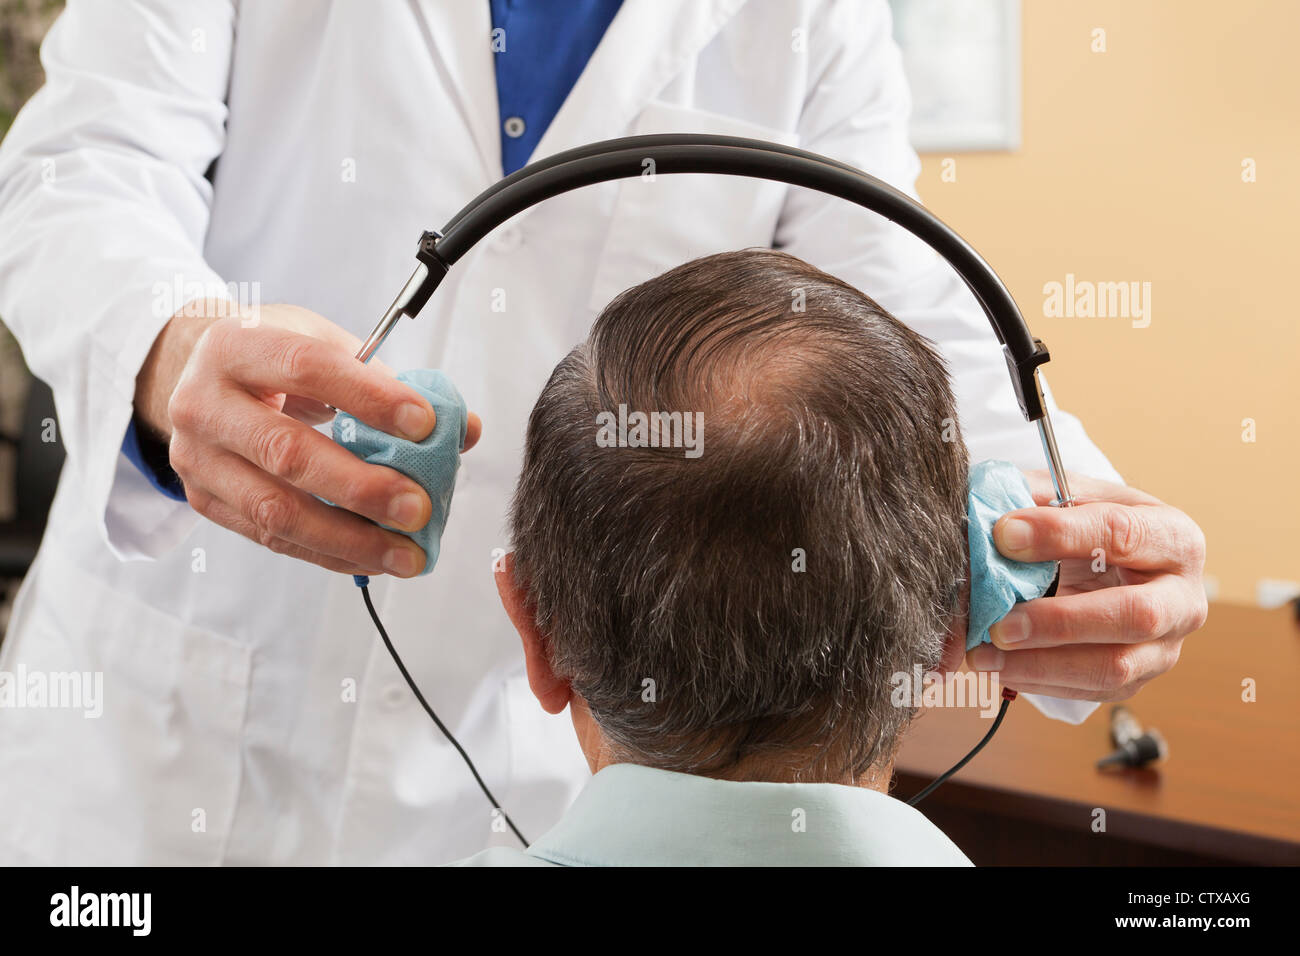 Hörgeräte-Akustiker platzieren einen Kopfhörer an einem Patienten für audiometrische Bewertung Stockfoto